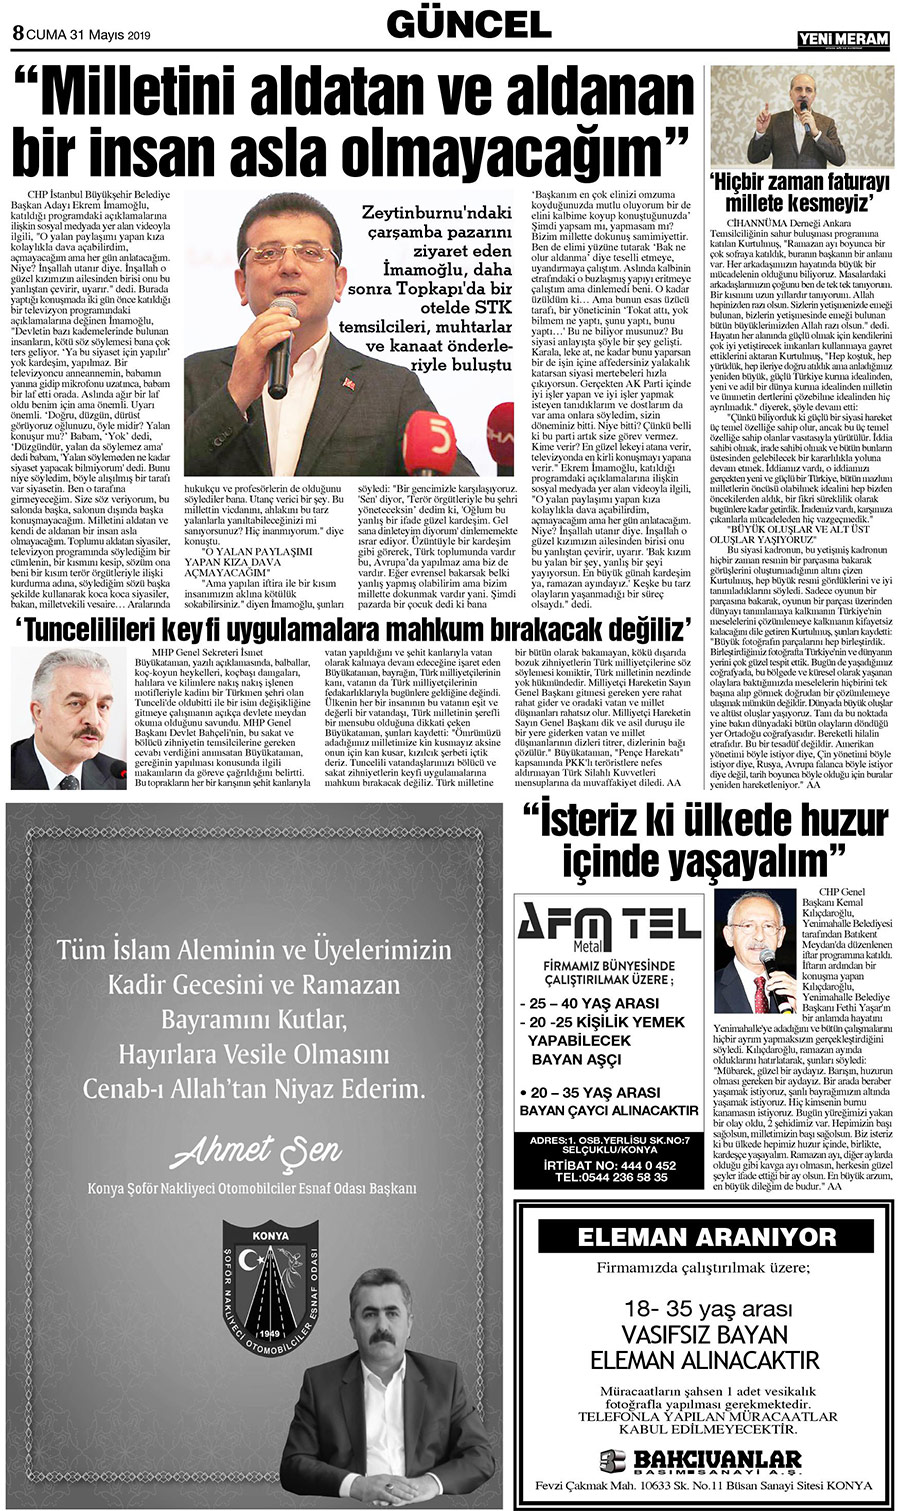 31 Mayıs 2019 Yeni Meram Gazetesi